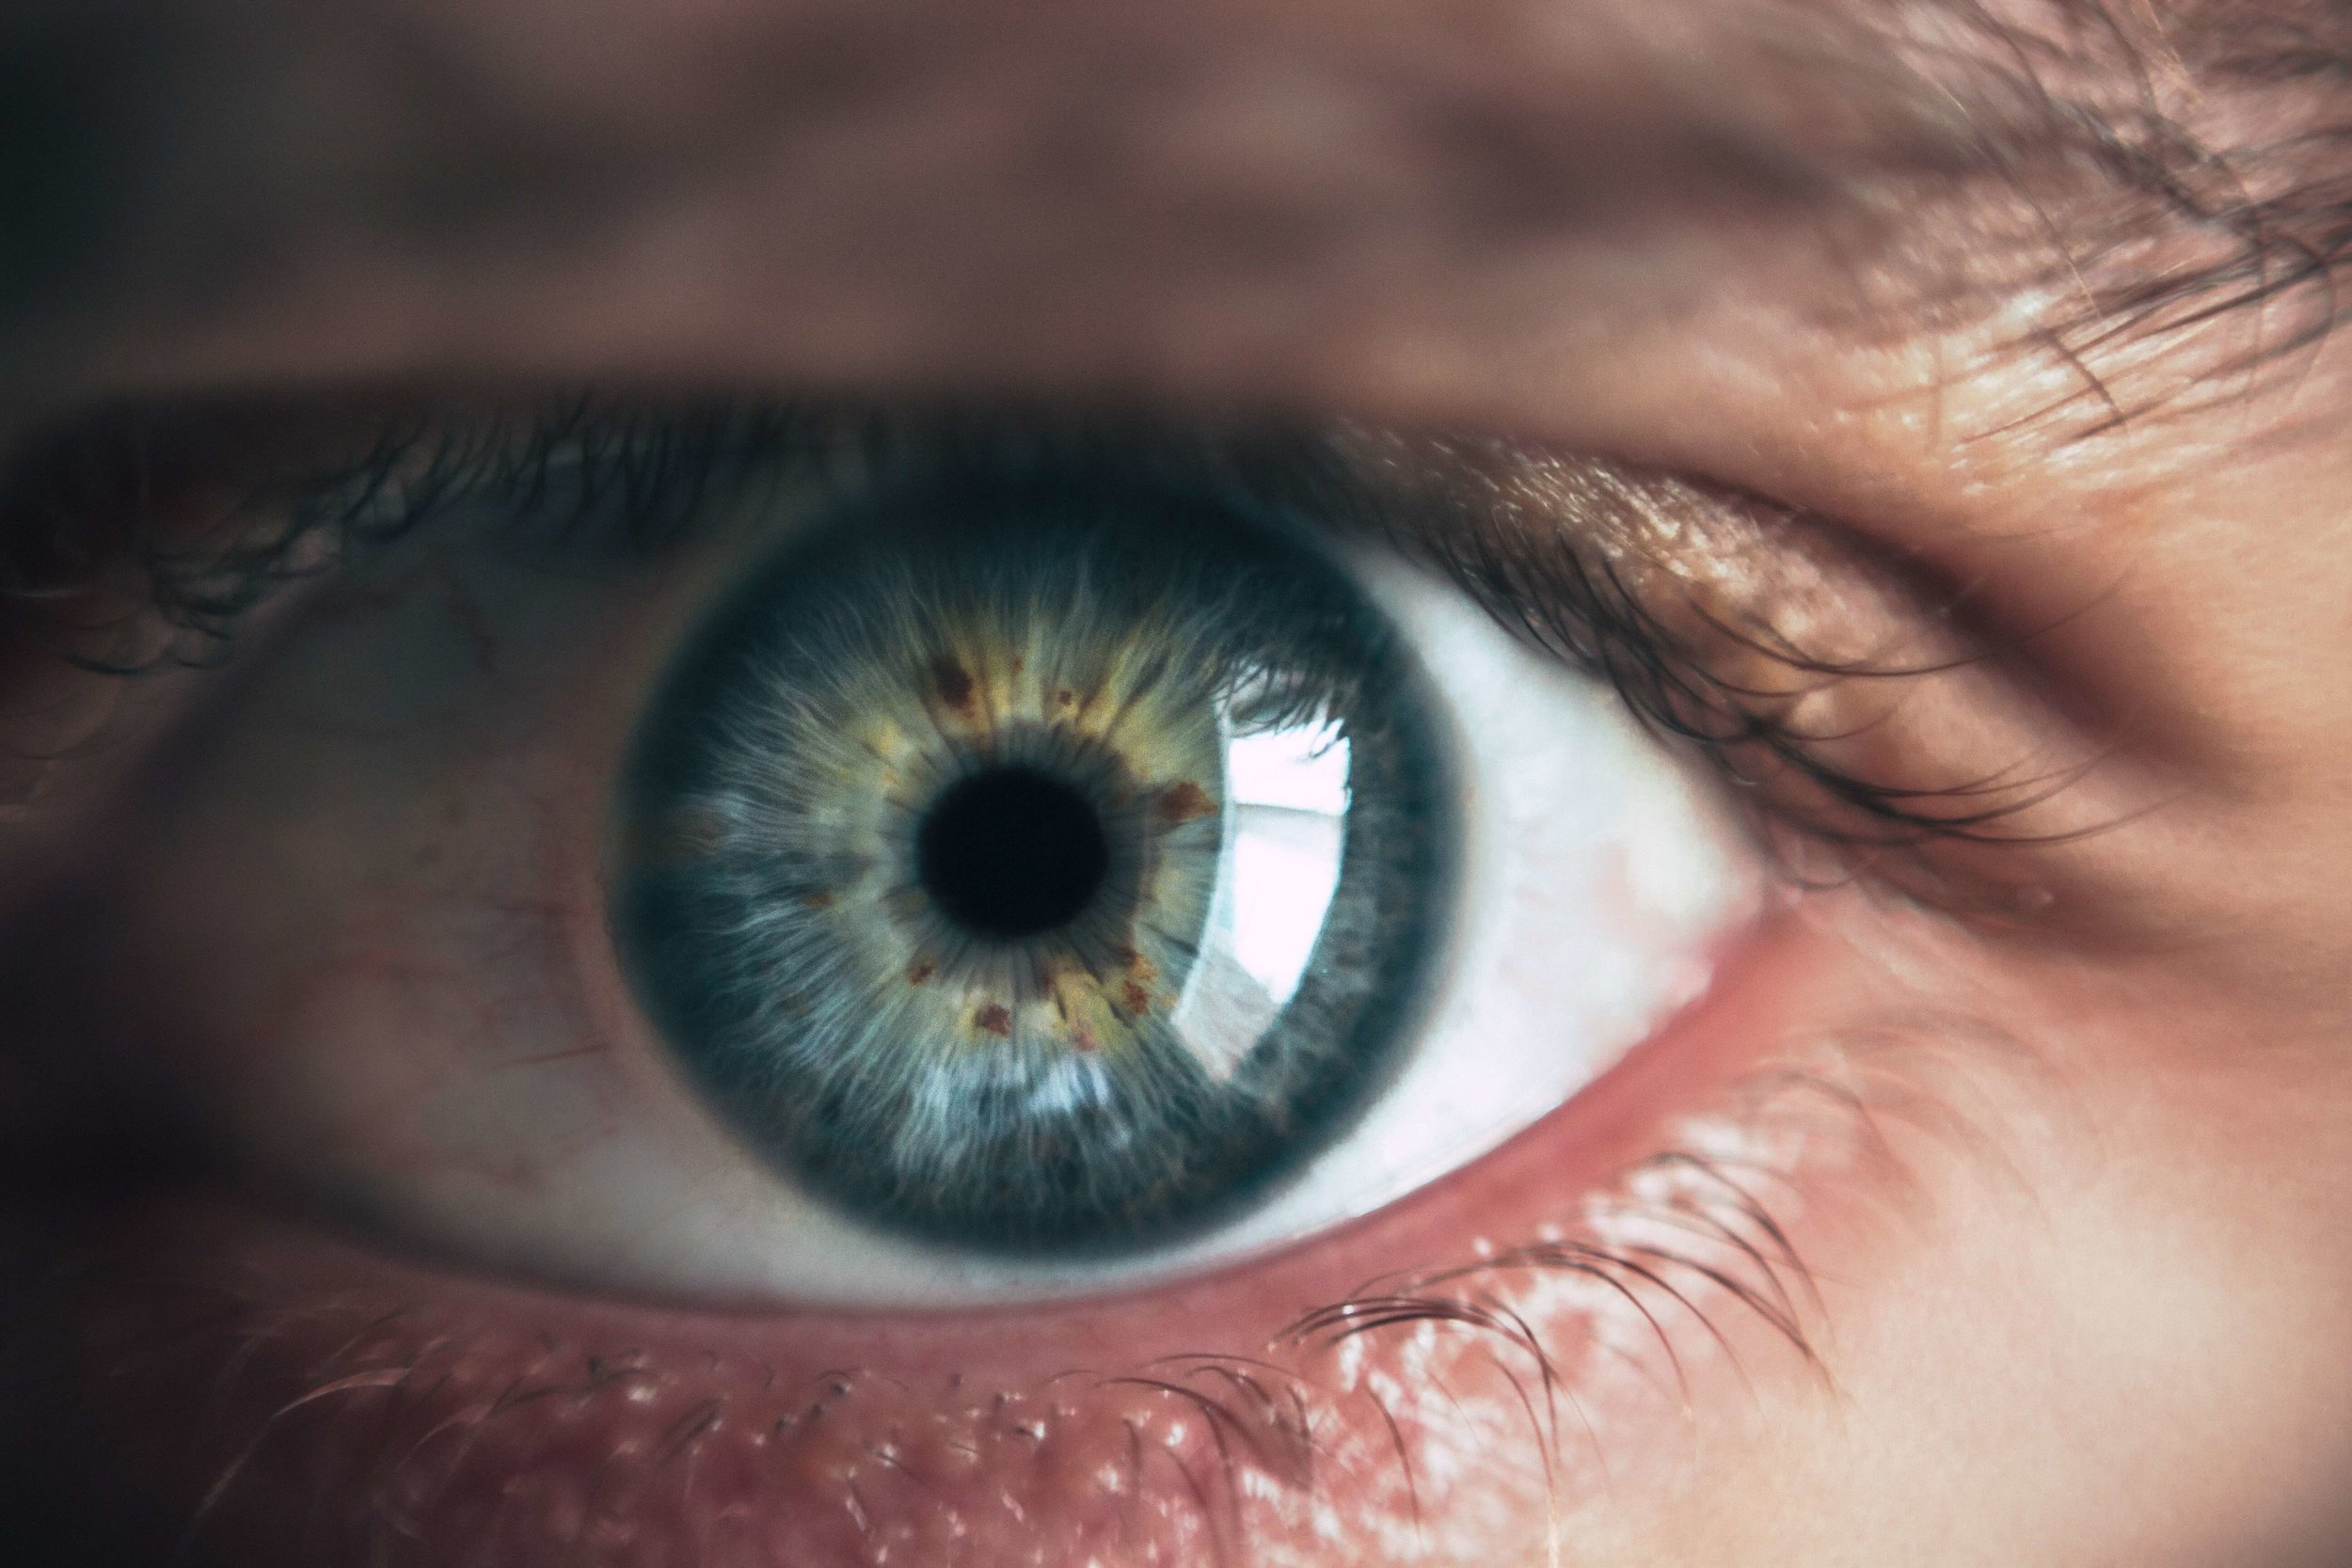 EMDR: Can Simple Eye Movement Really Treat Trauma